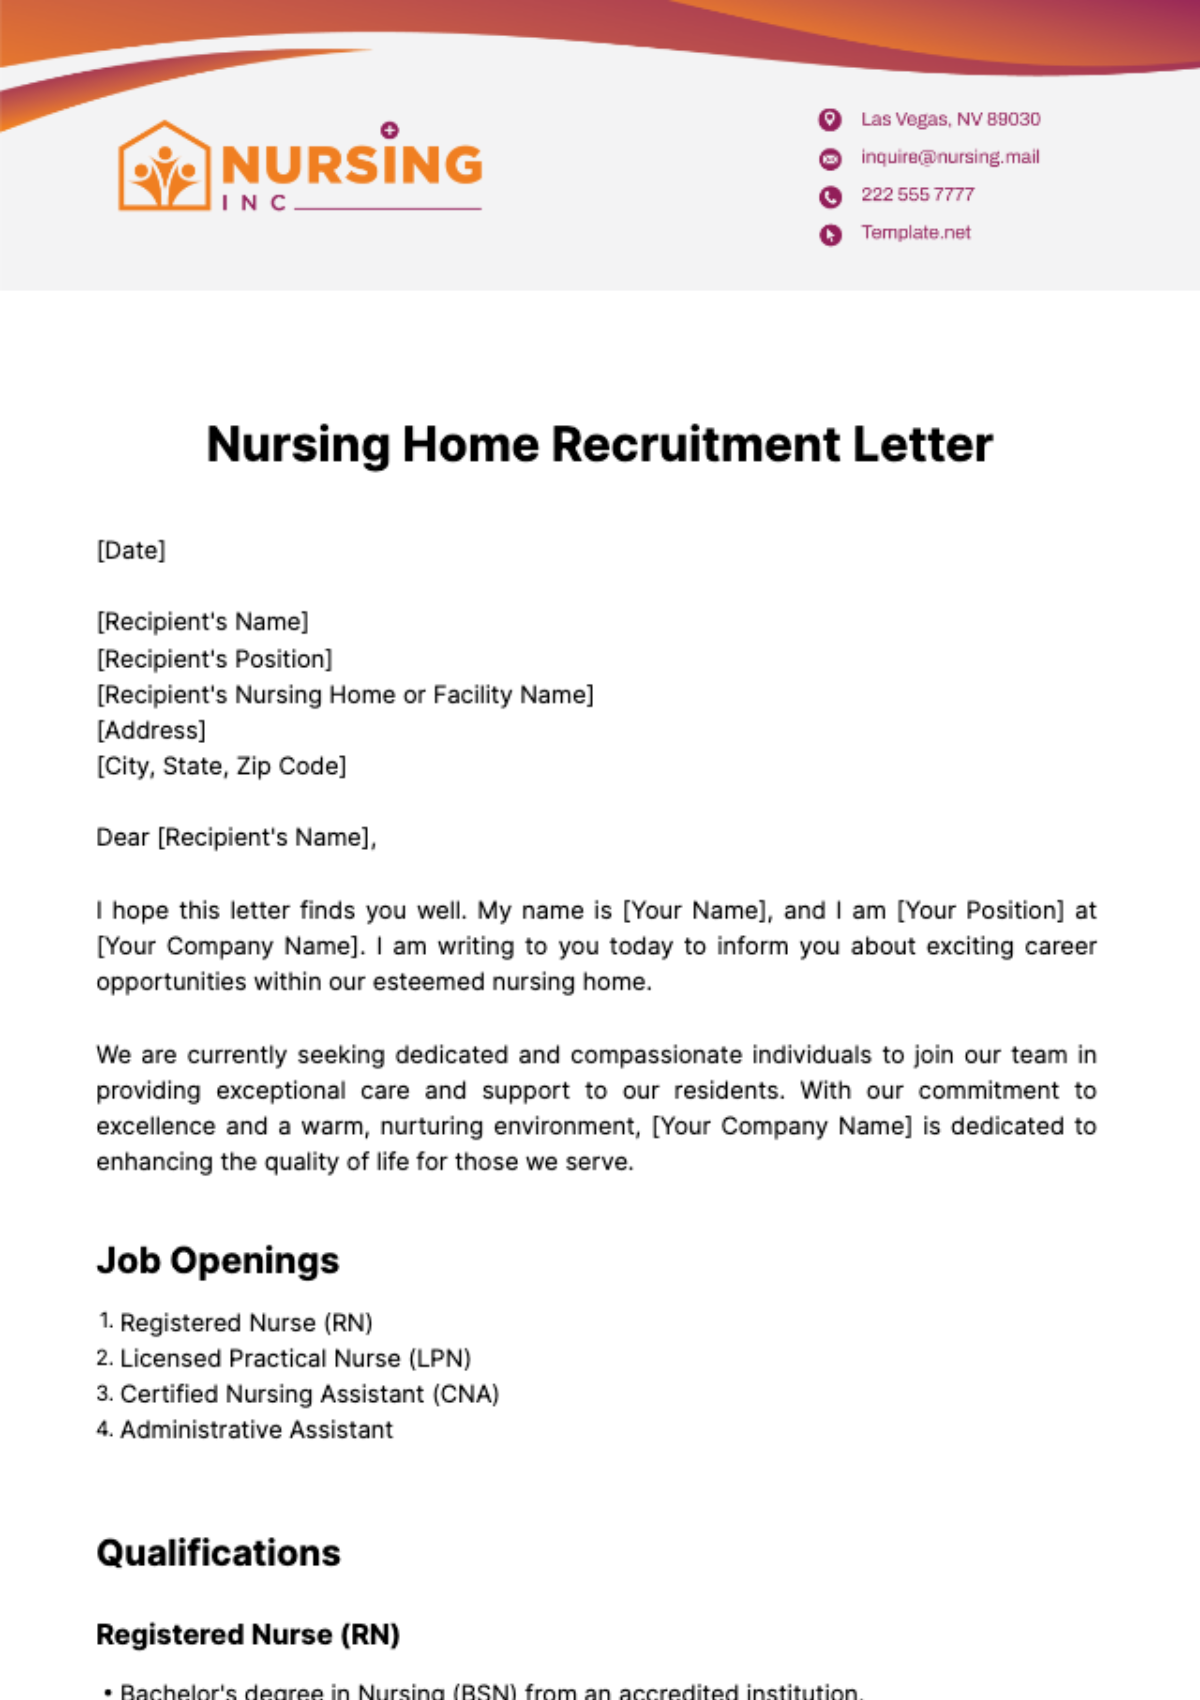 Nursing Home Recruitment Letter Template